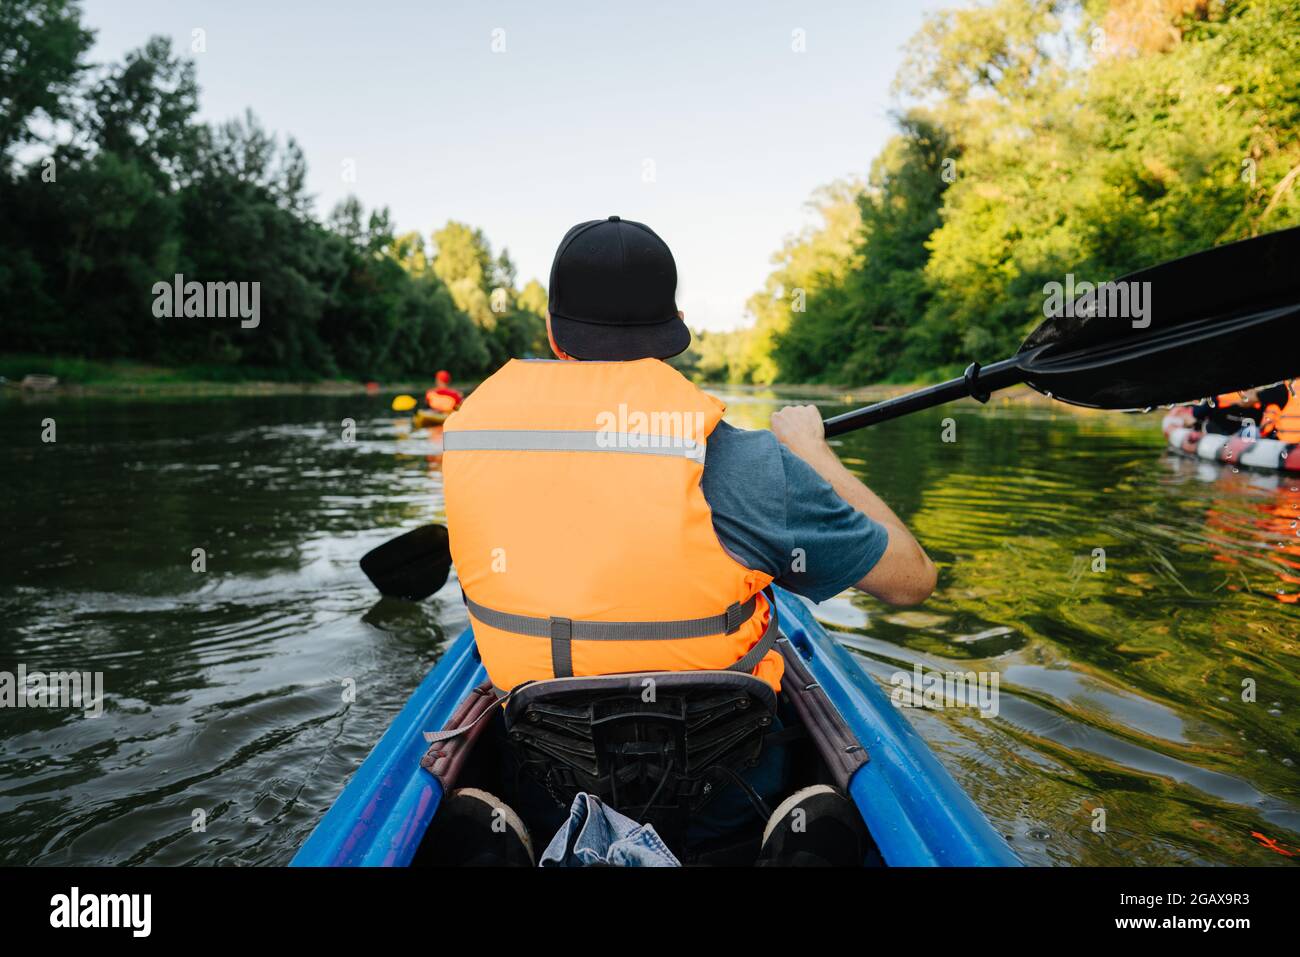 wa08 1:220 hombre con anaranjado chaleco en el kayak verdes personaje pintadas pista Z 